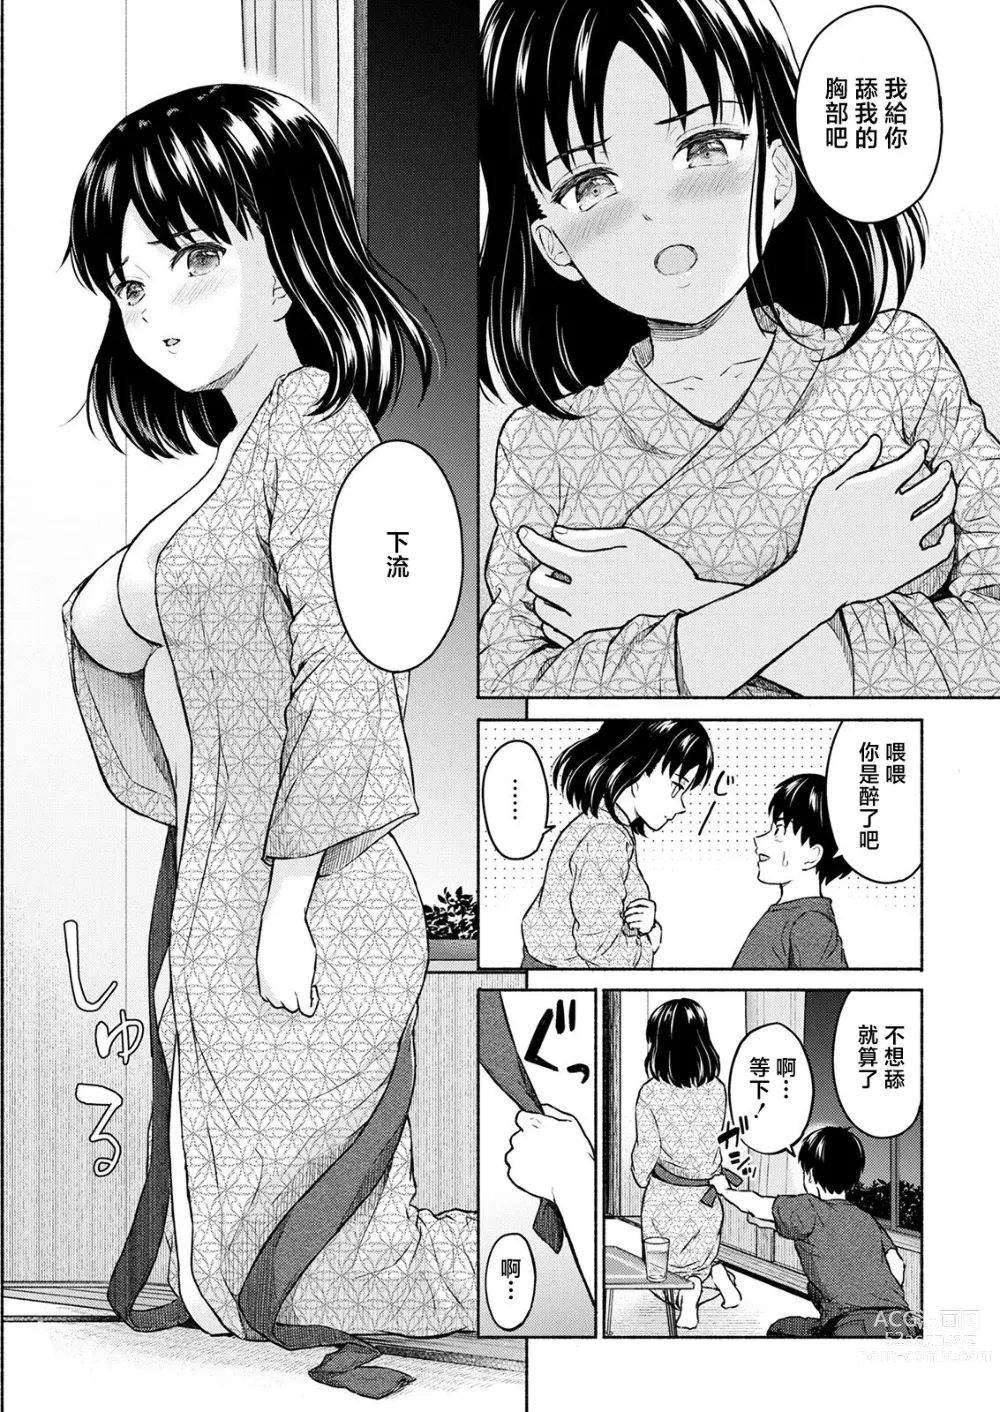 Page 15 of manga Marude Rokugatsu no Kohan o Fuku Kaze no you ni Zenpen